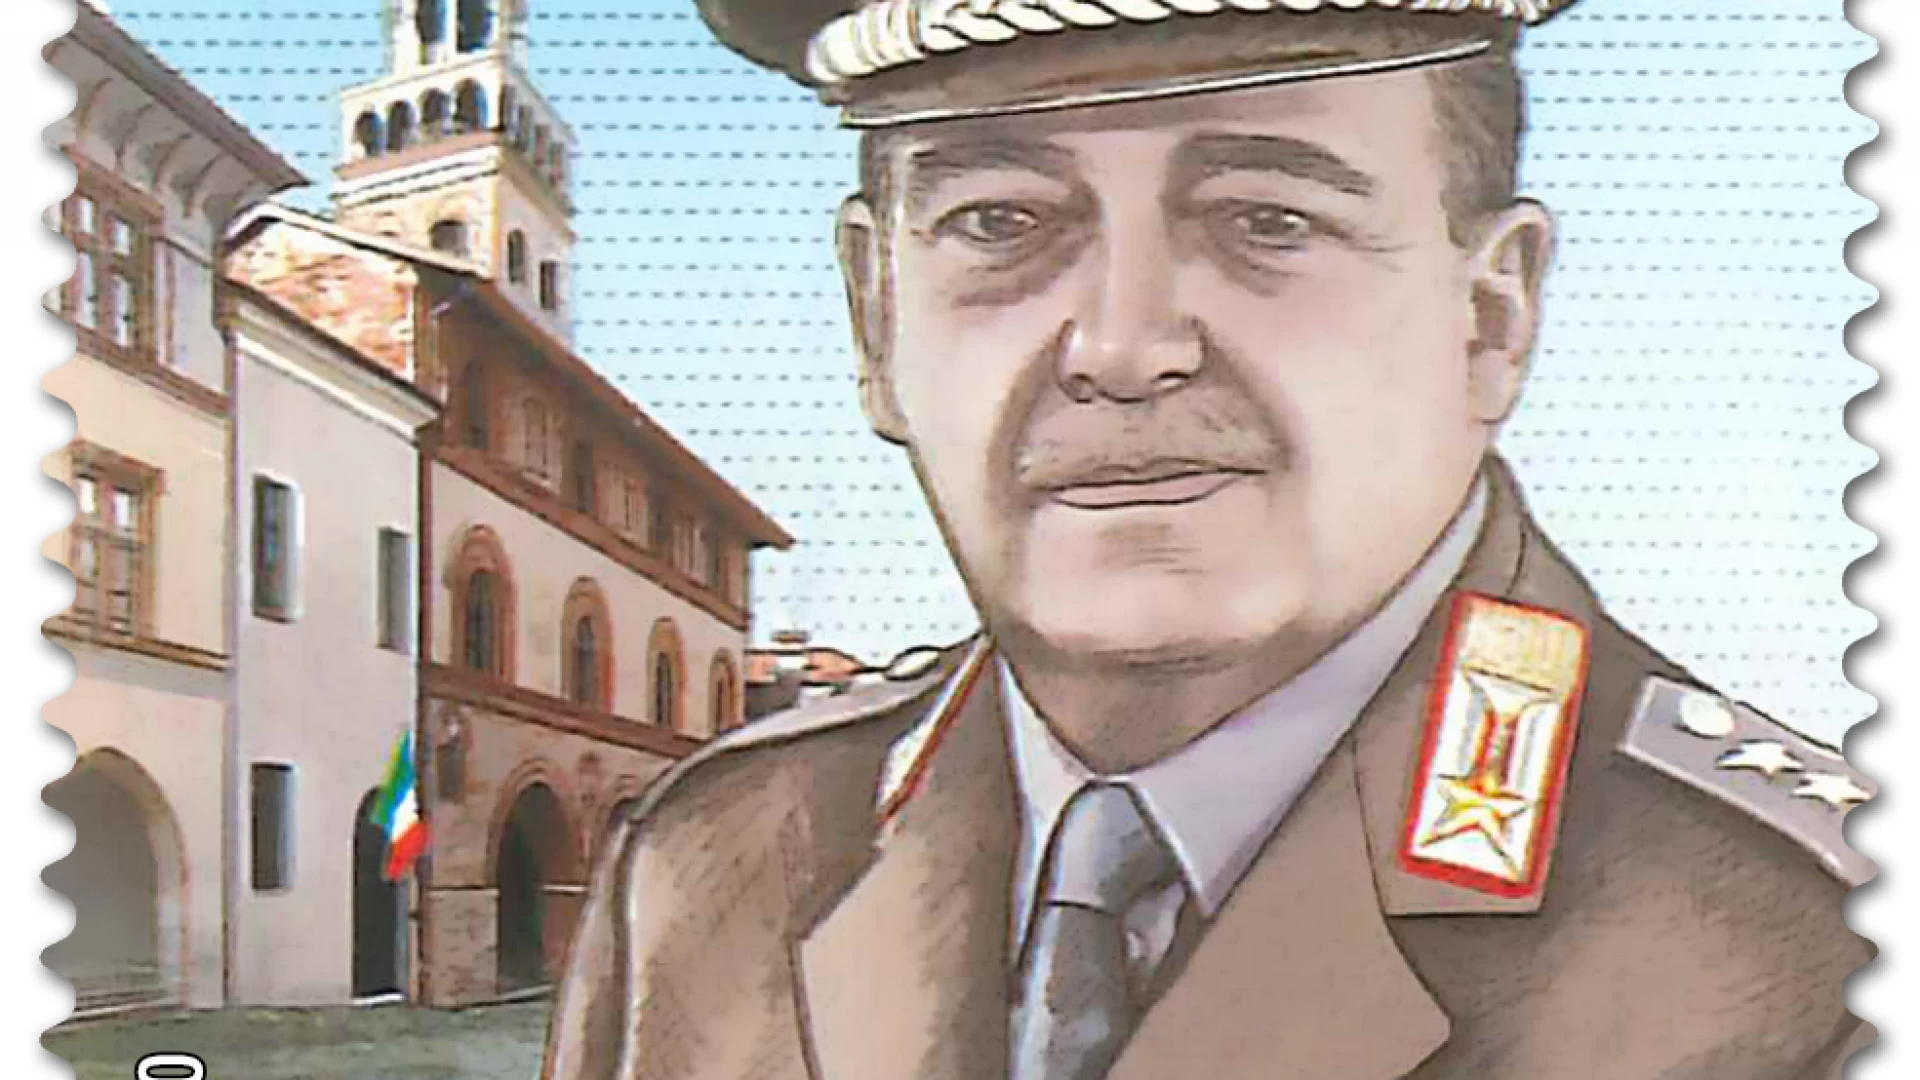 L'Arma dei Carabinieri commemora l'anniversario della morte del generale Carlo Alberto Dalla Chiesa. Guarda il video